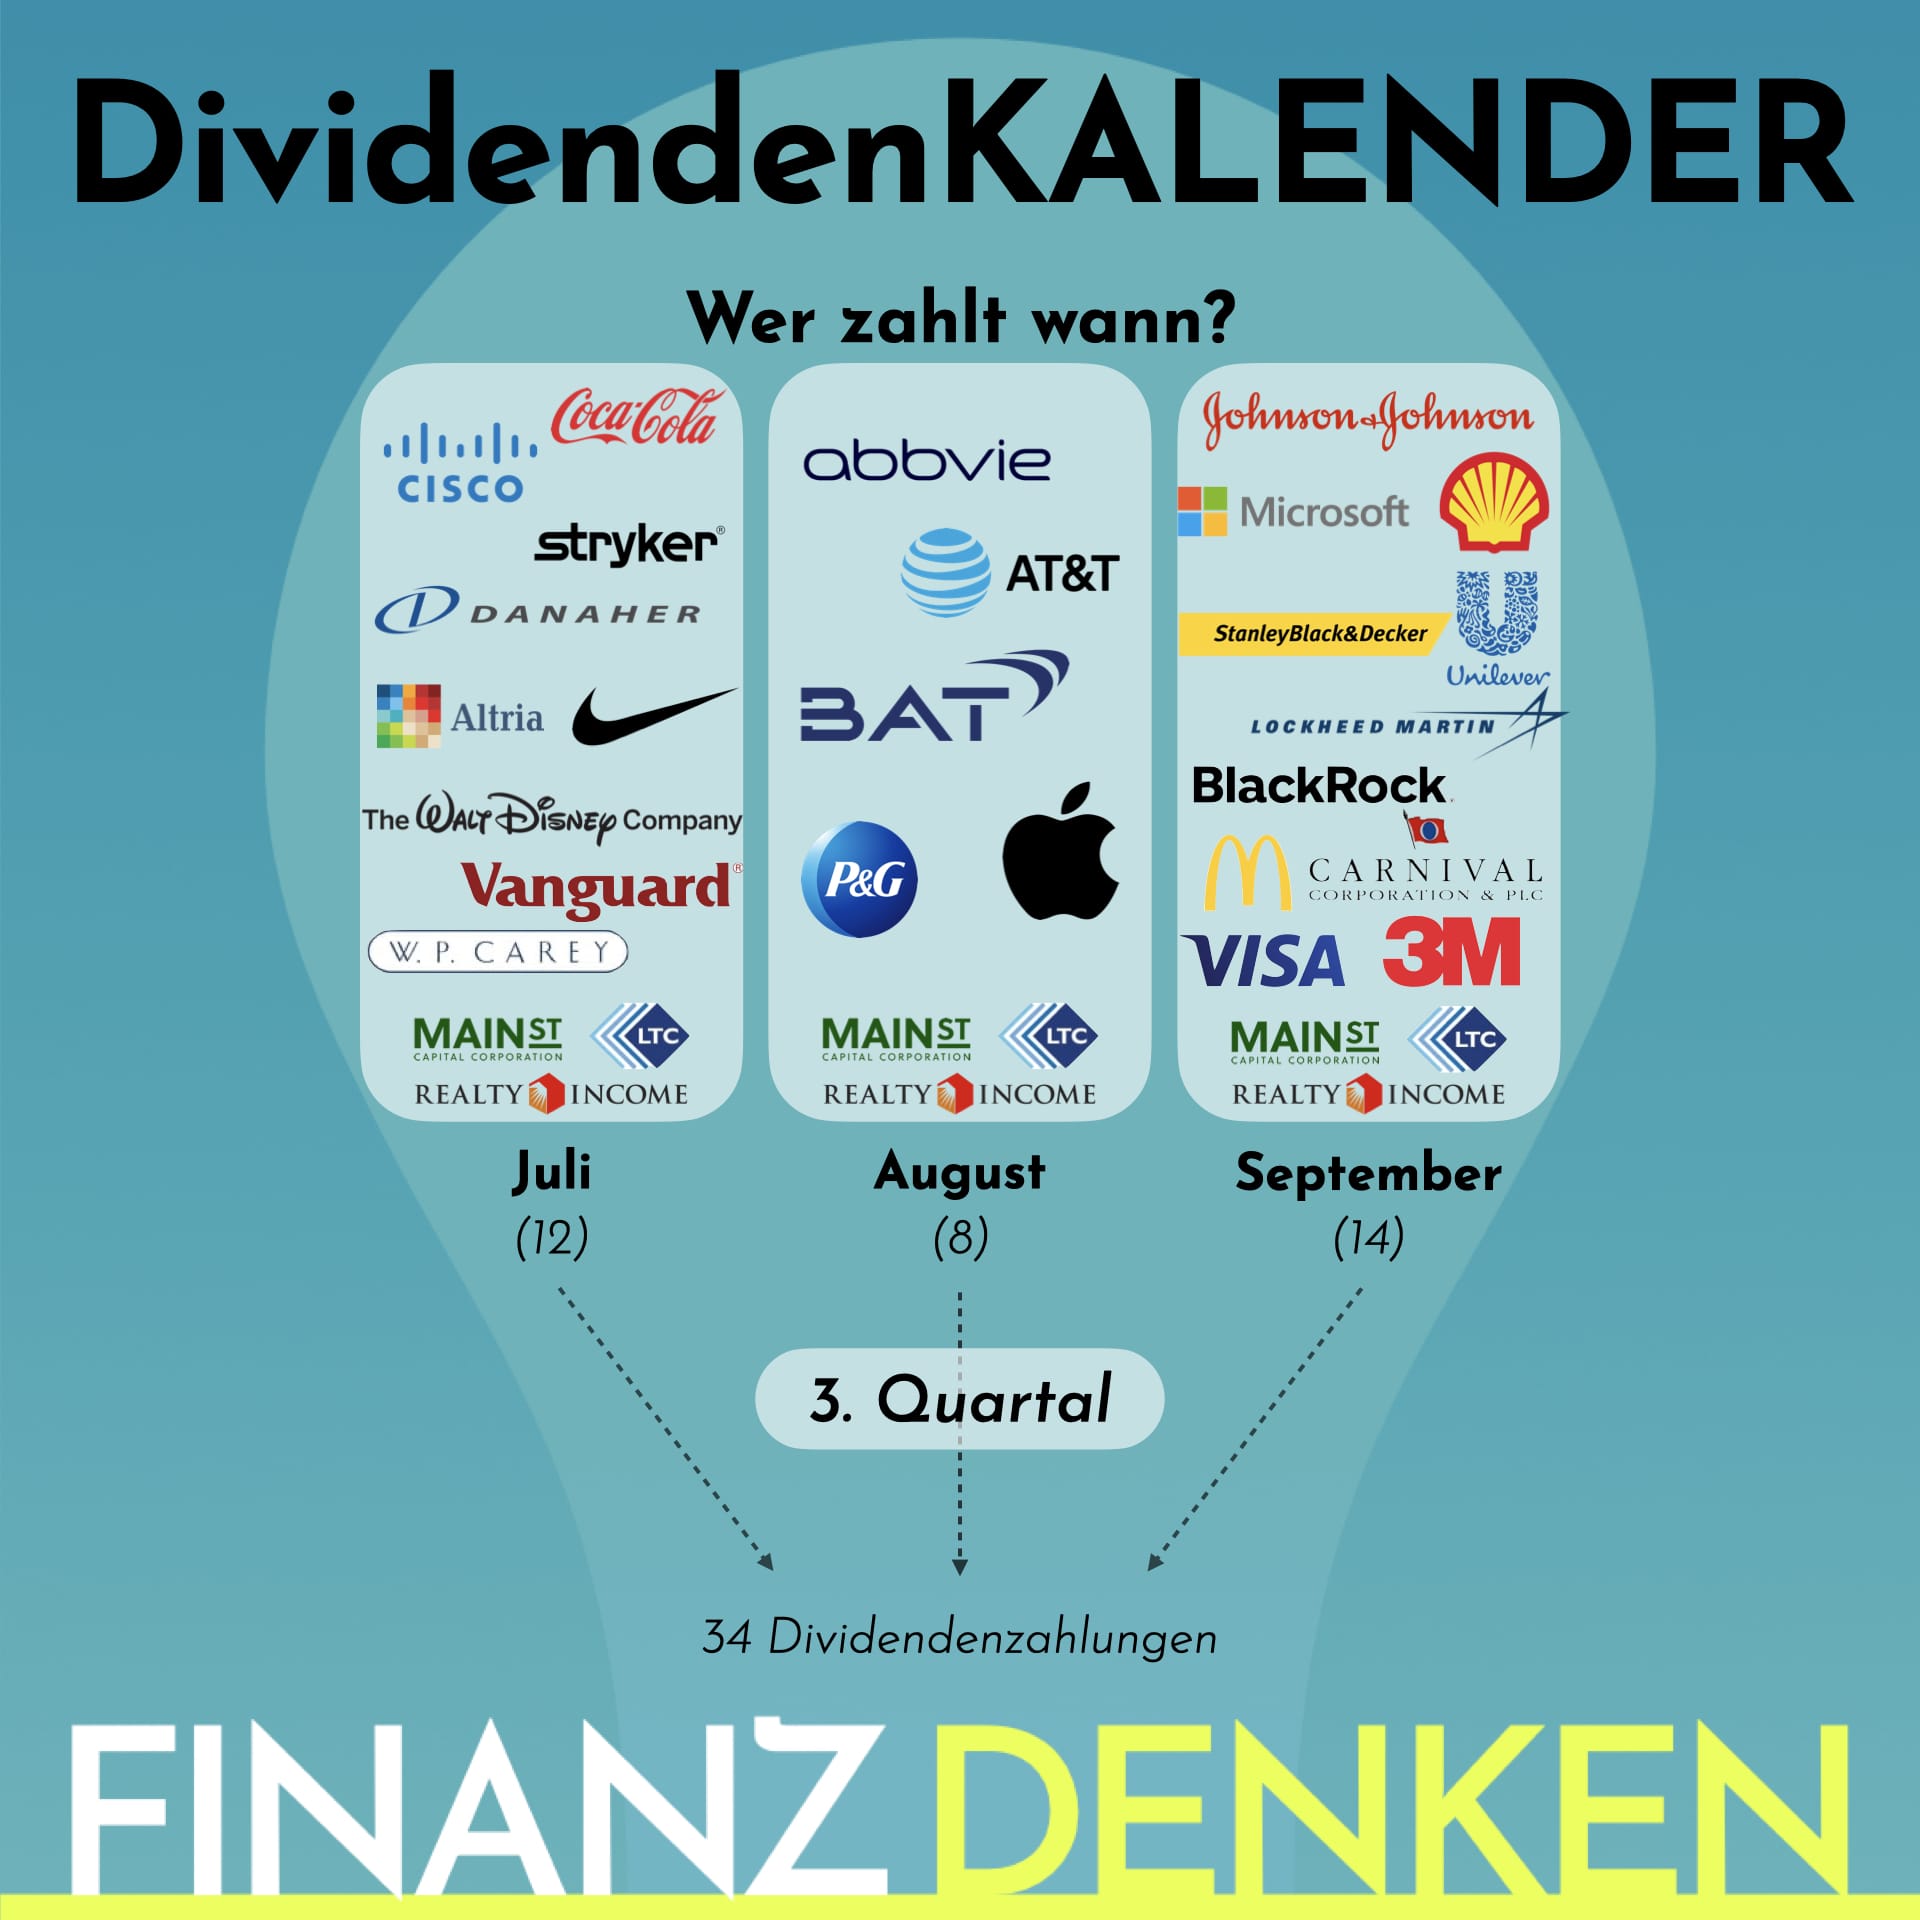 Finanzdenken Dividendenkalender 233